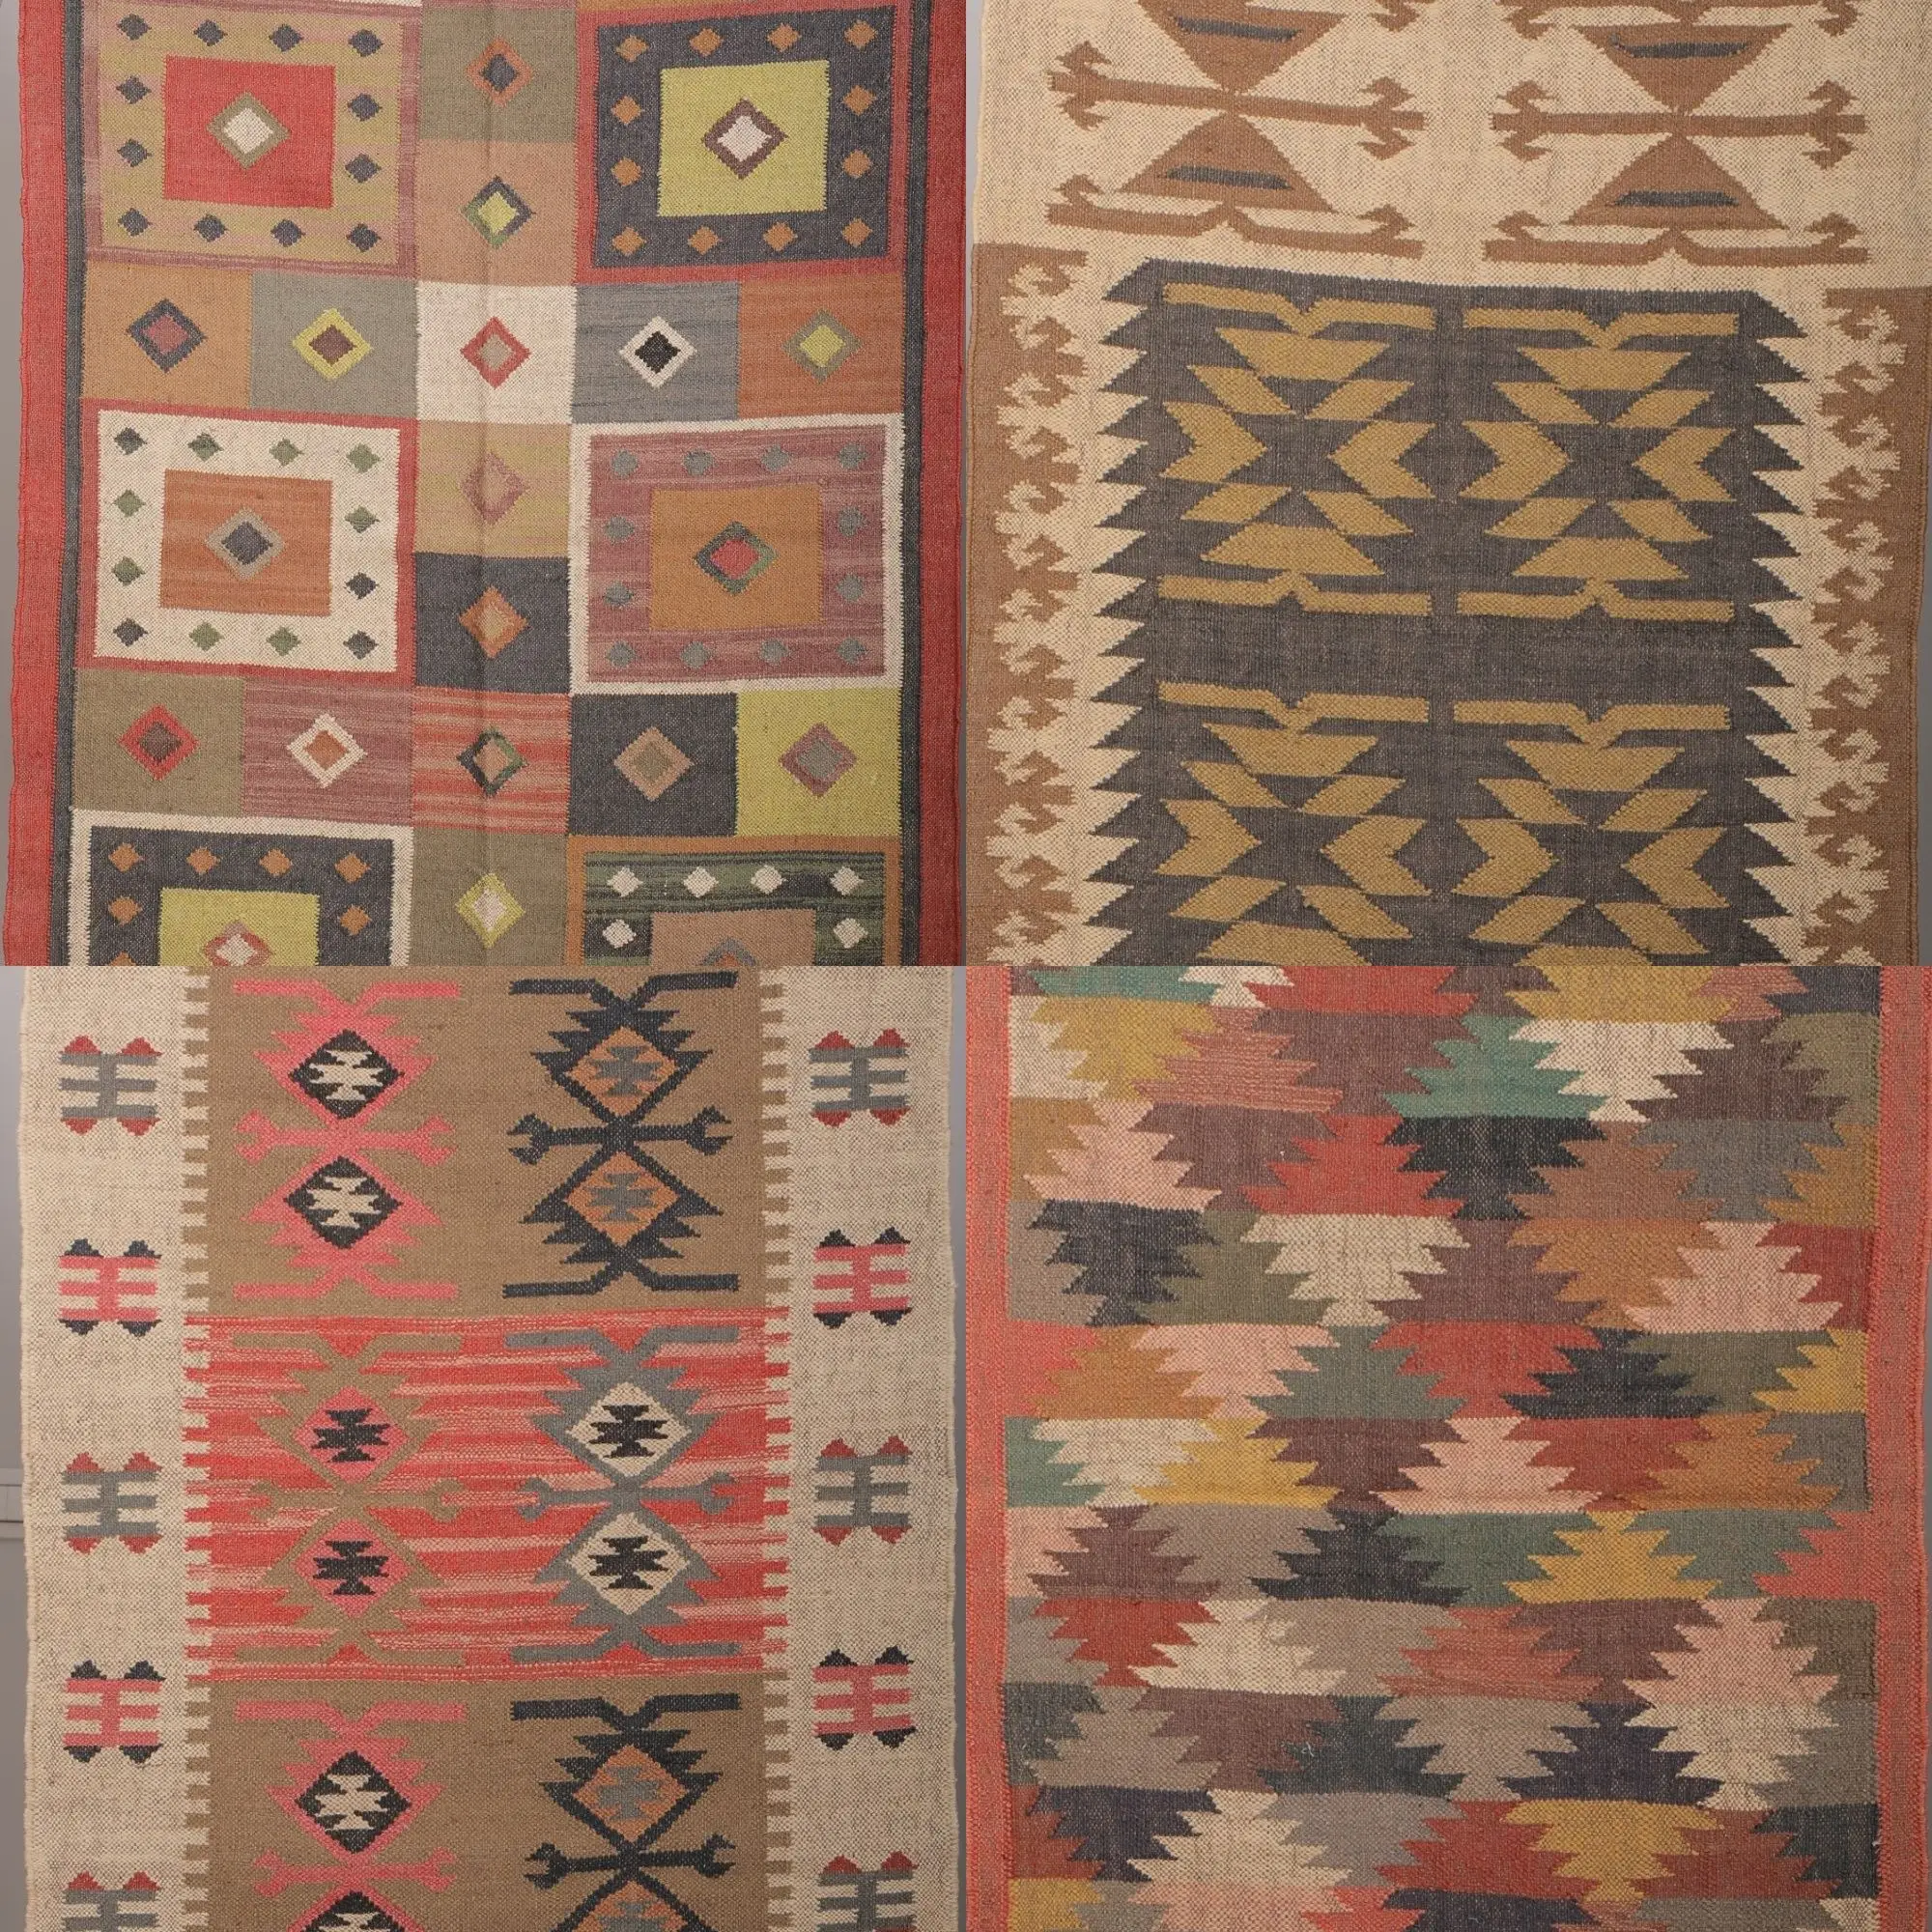 Autentico tappeto Kilim juta realizzato a mano tessuto a mano bellissimo tappeto tappetino da Yoga sostenibile per tutte le stagioni Design elegante tappetino da Yoga fatto a mano